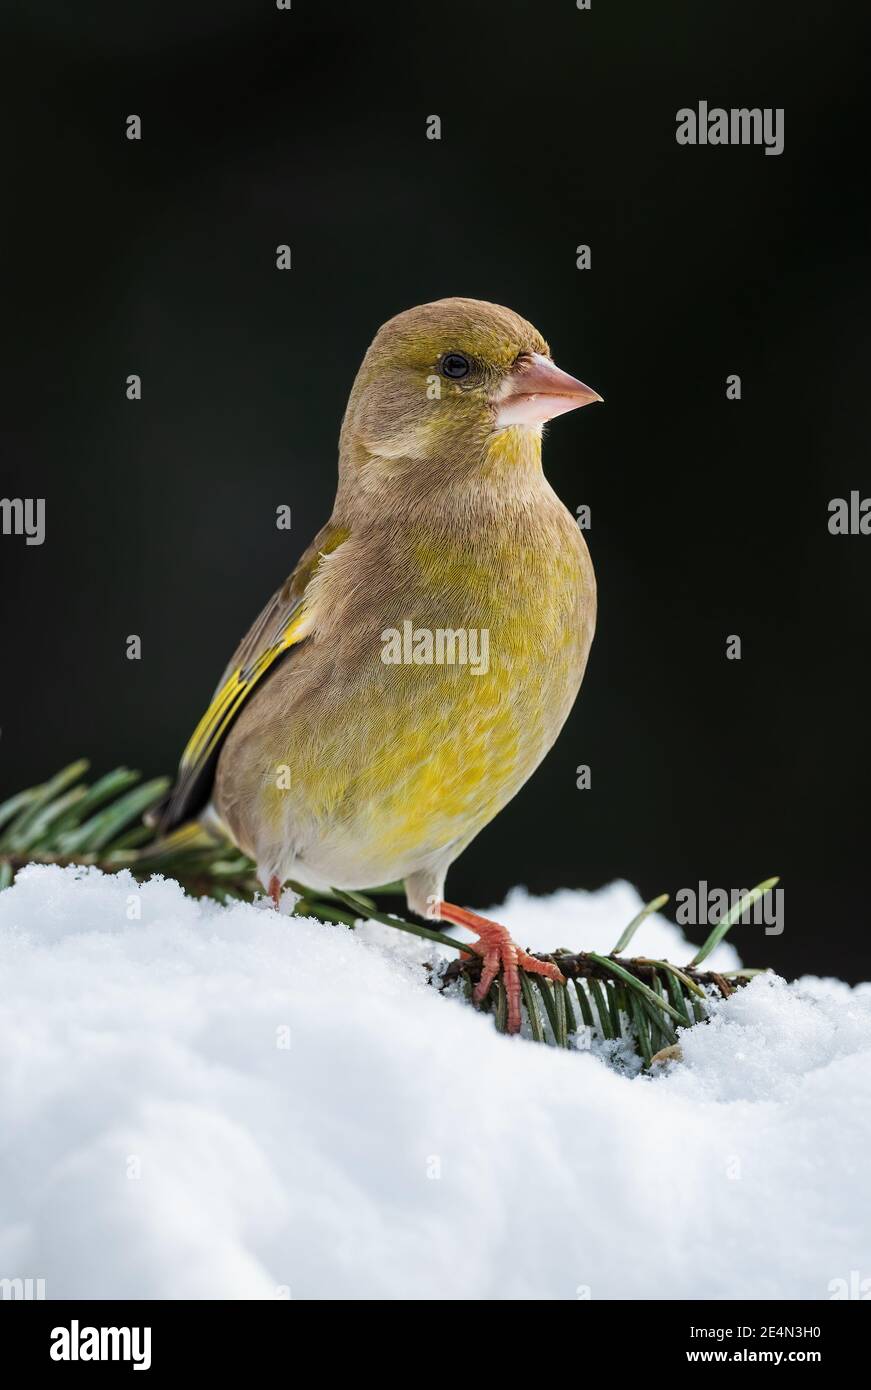 European Greenfinch - Chloris chloris, magnifique oiseau de passereau des jardins et des bois européens, Zlin, République tchèque. Banque D'Images